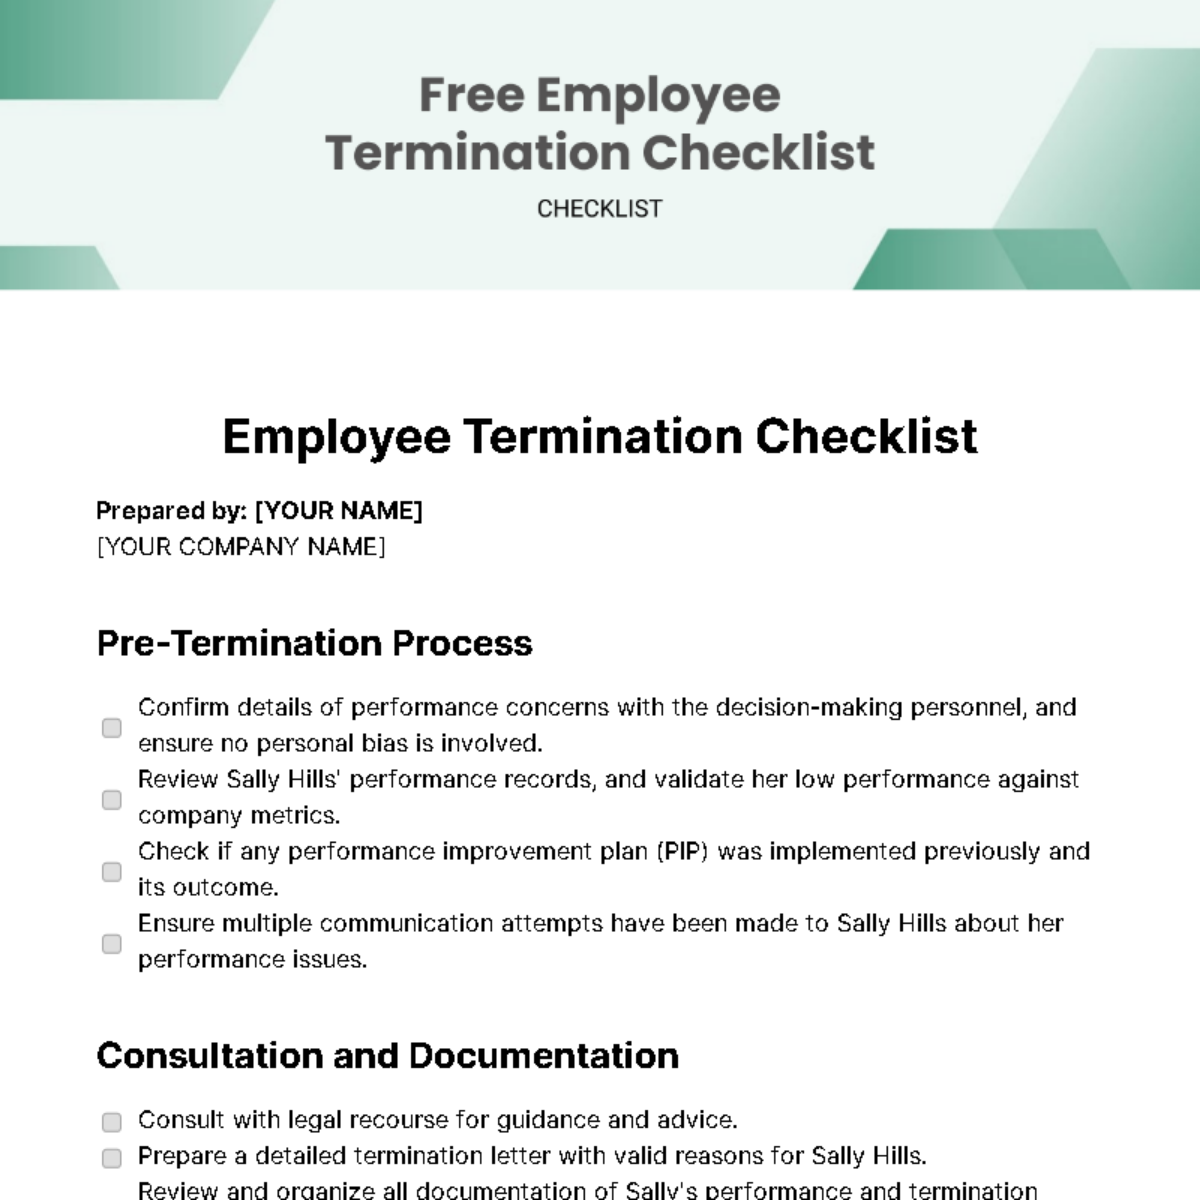 Employee Termination Checklist Template - Edit Online & Download ...